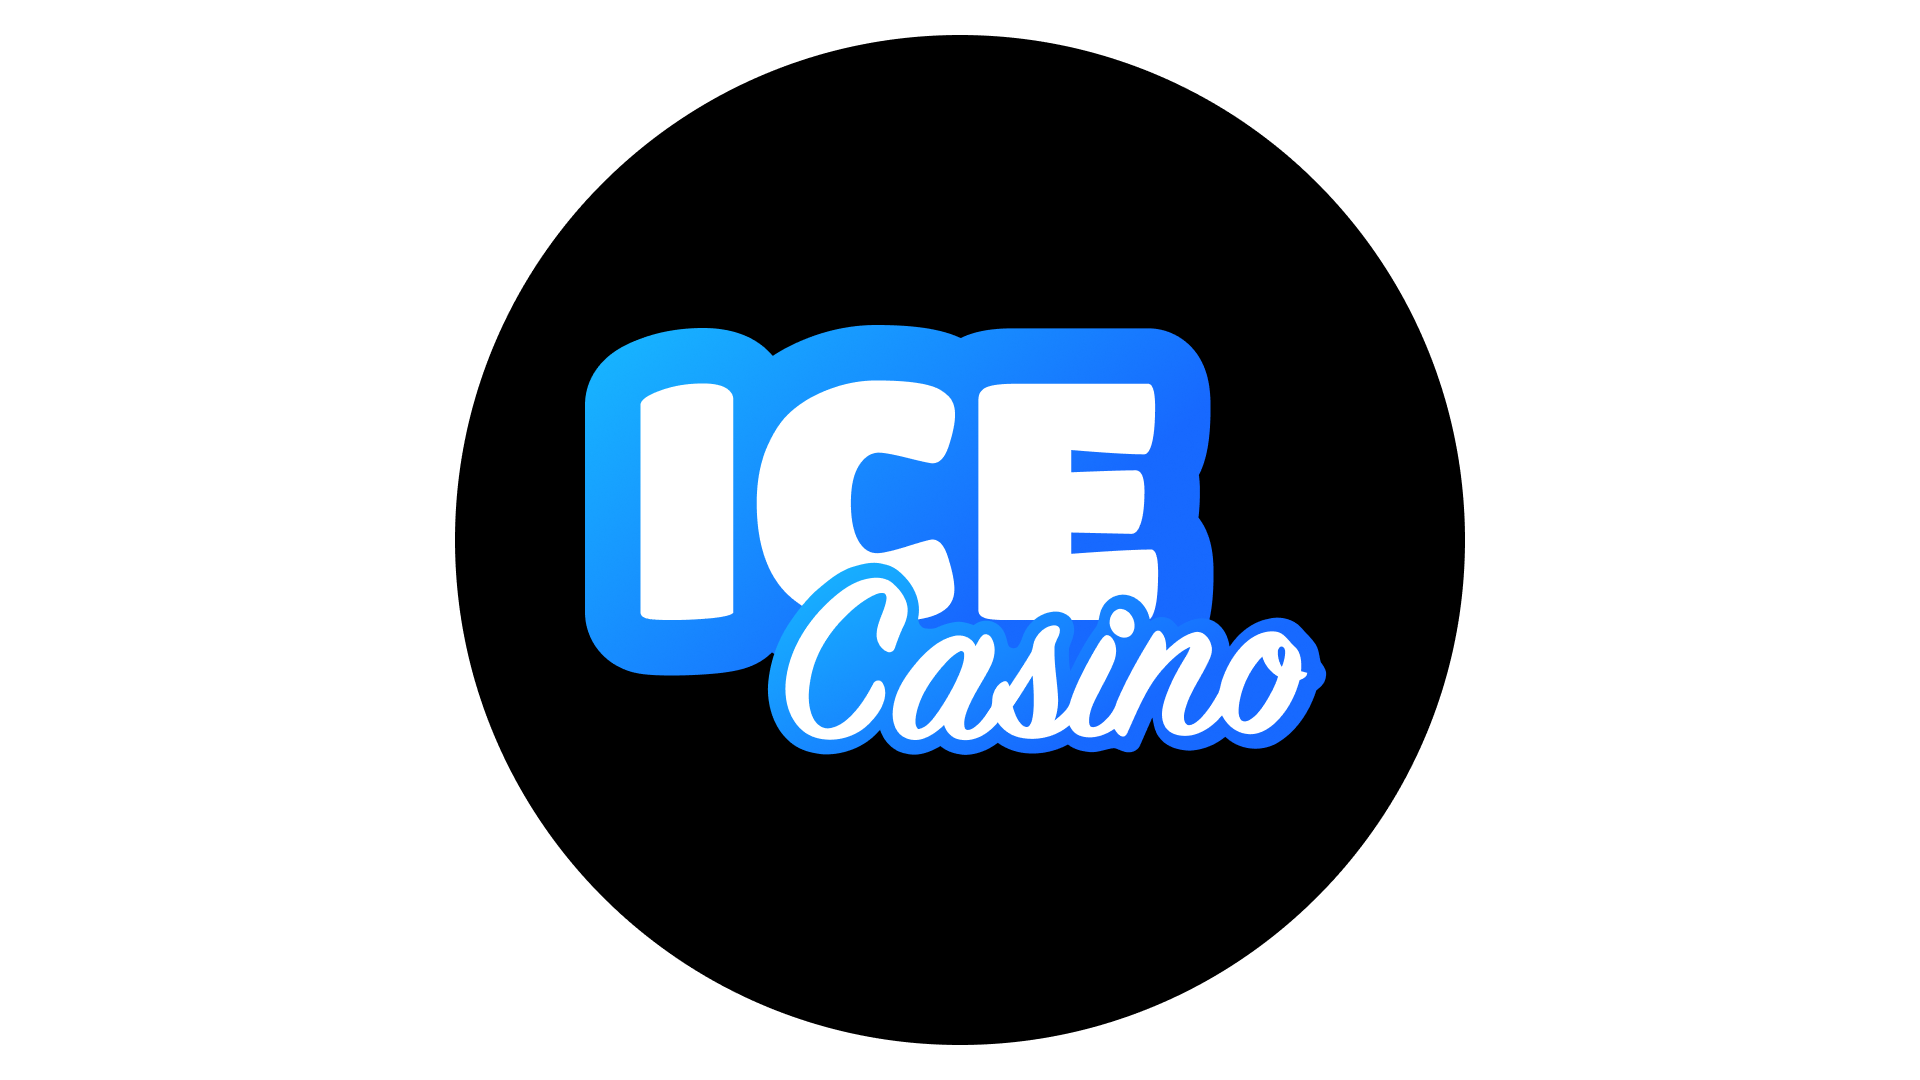 Ice Casino Κριτικές – Είναι το Ice Casino νόμιμο;